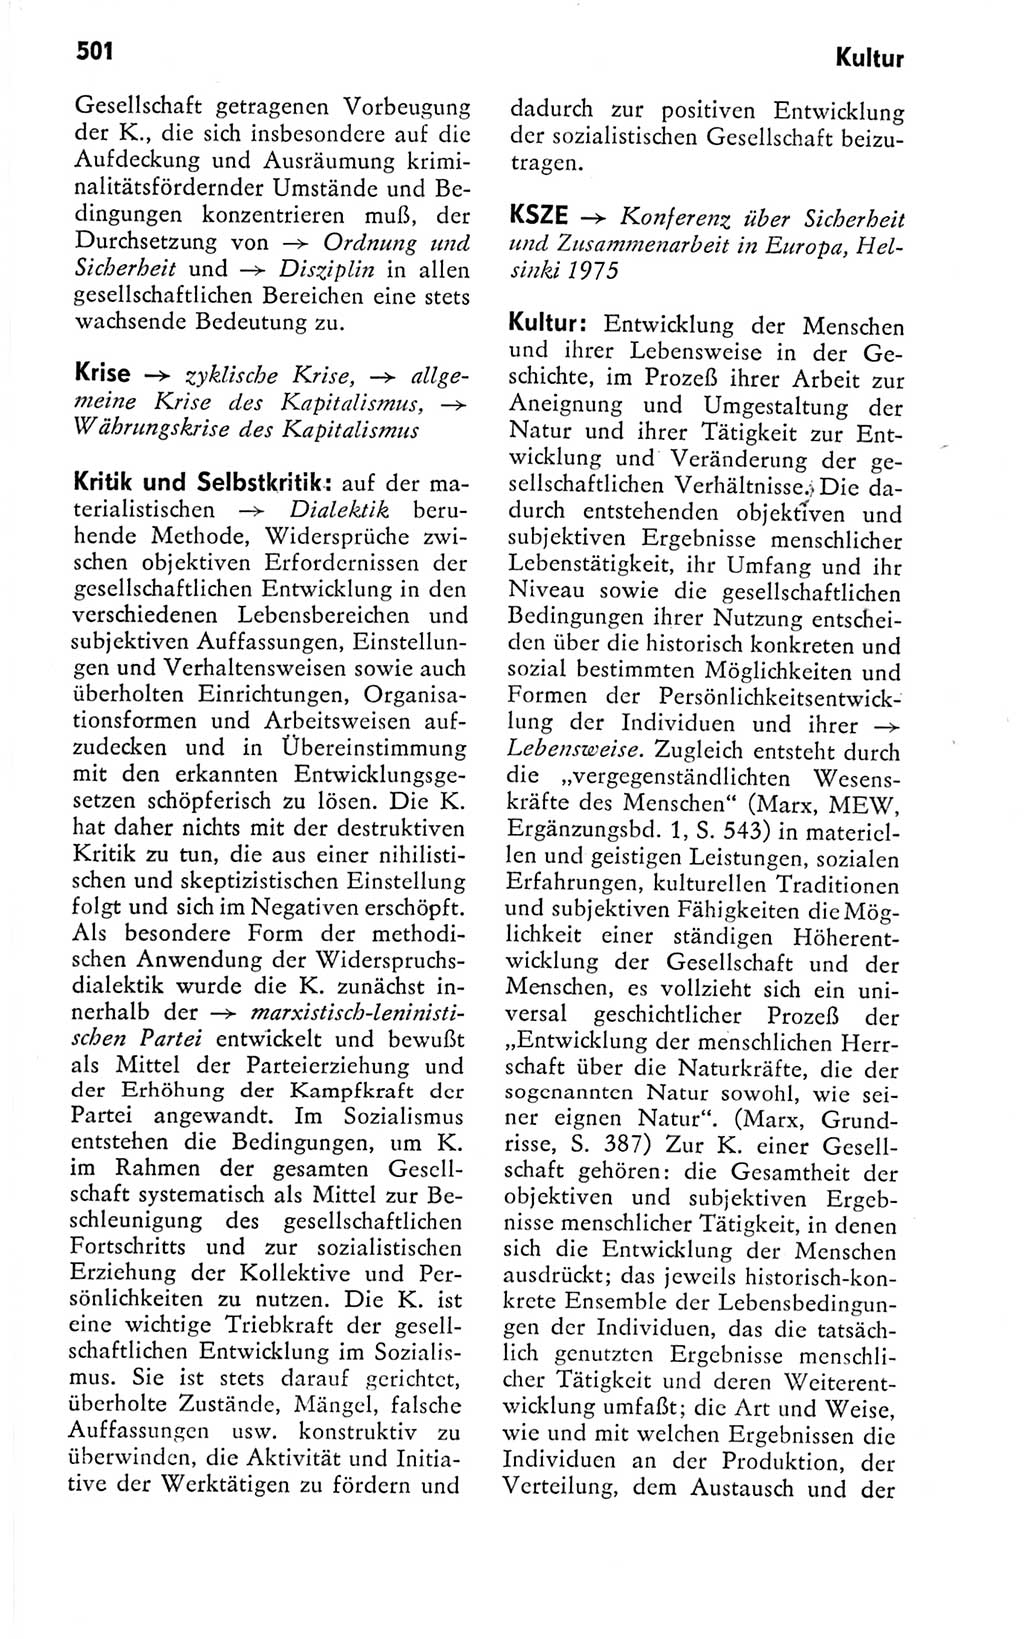 Kleines politisches Wörterbuch [Deutsche Demokratische Republik (DDR)] 1978, Seite 501 (Kl. pol. Wb. DDR 1978, S. 501)